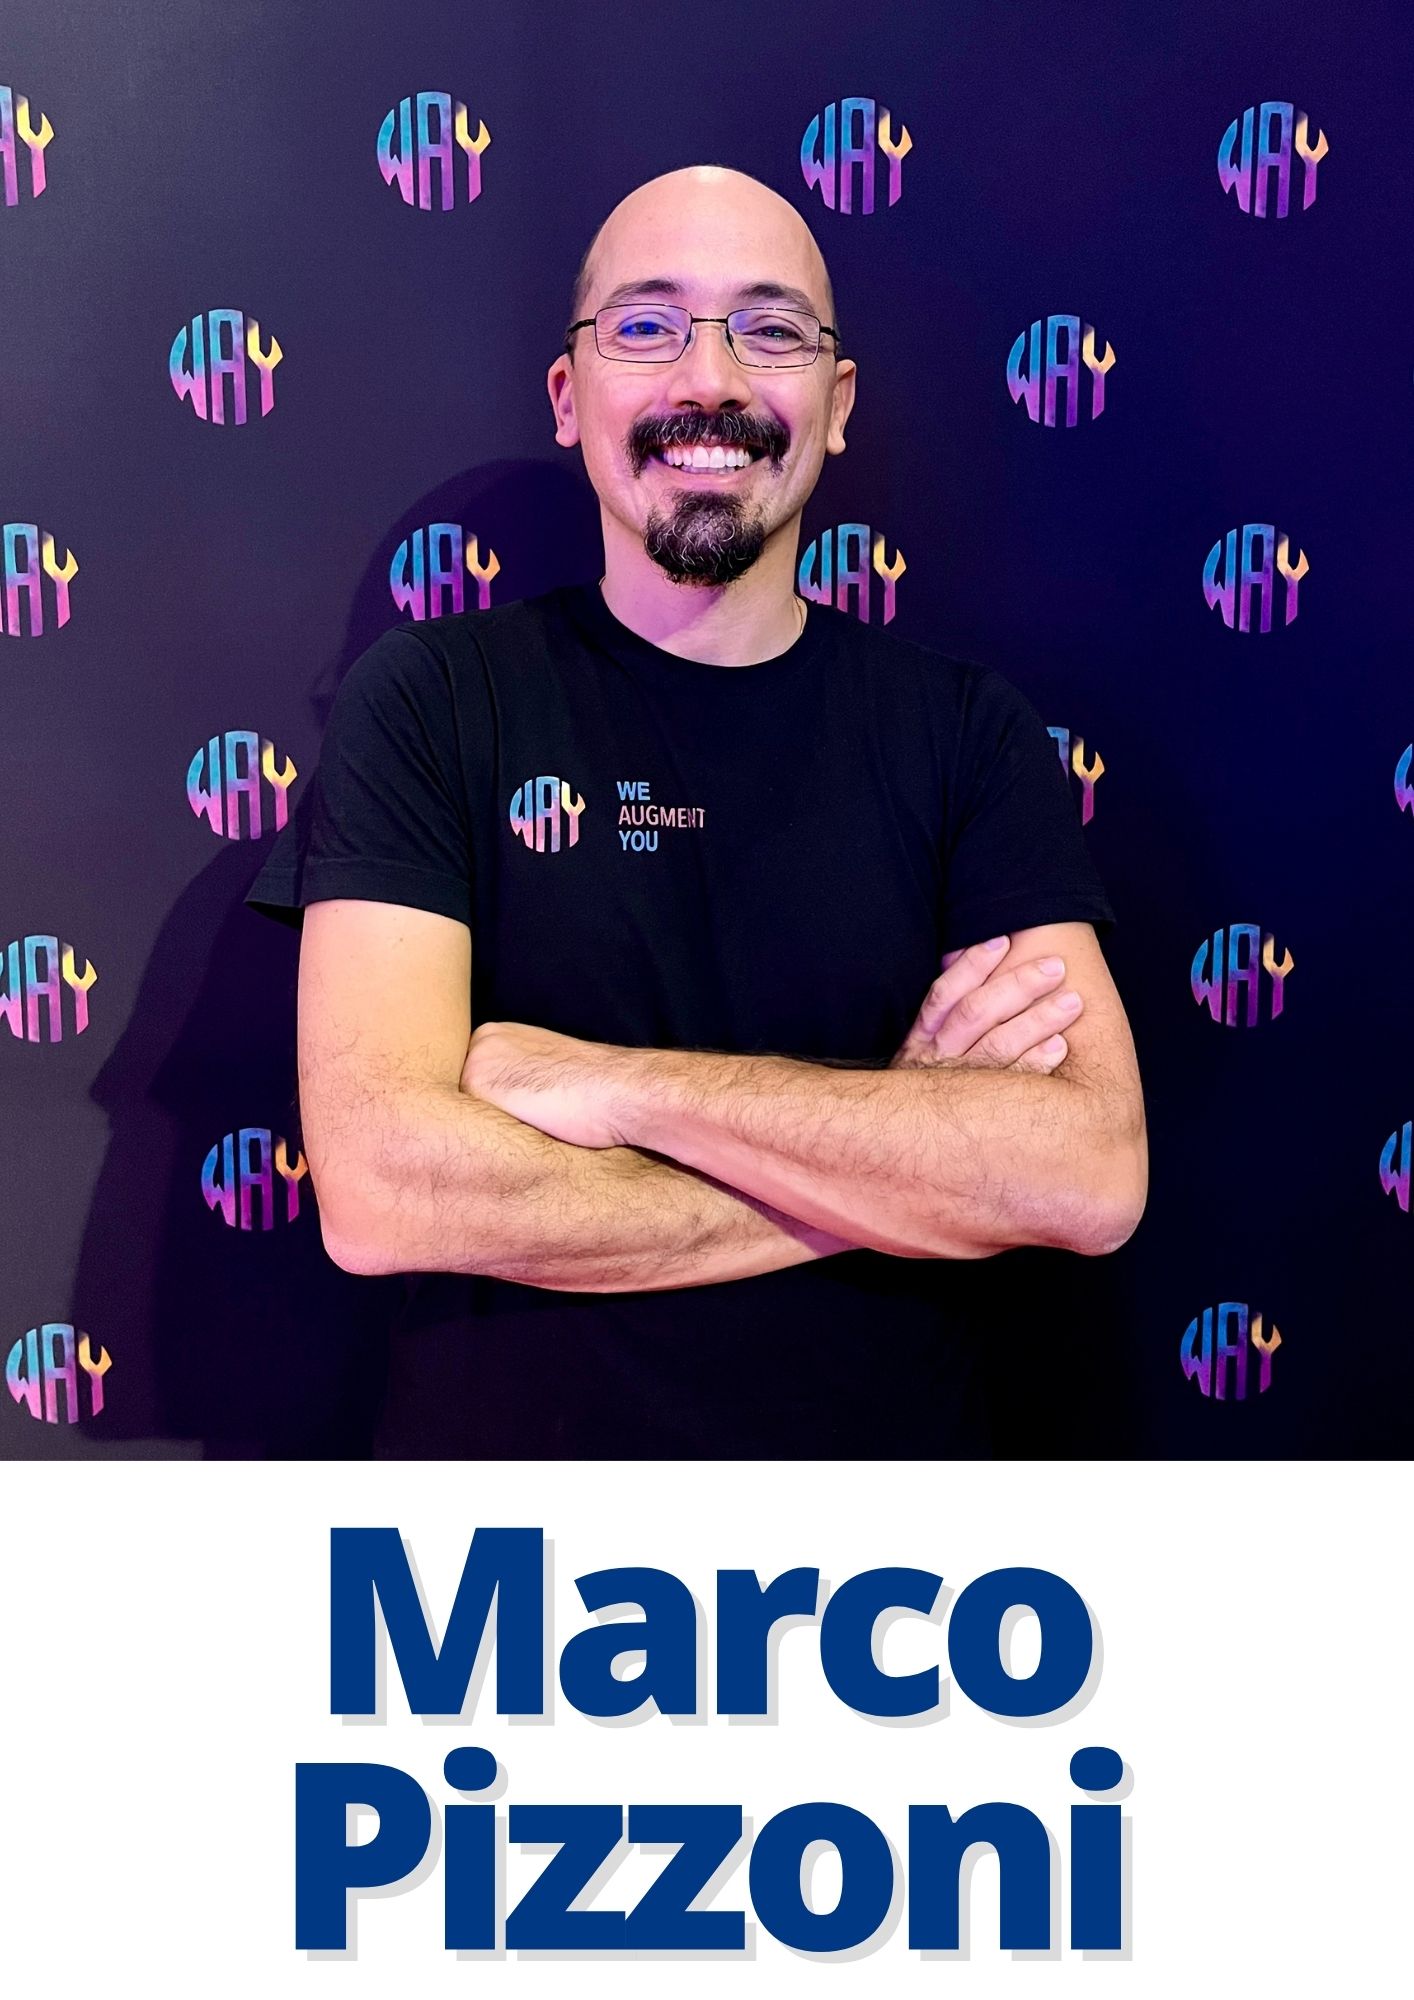 Marco Pizzoni